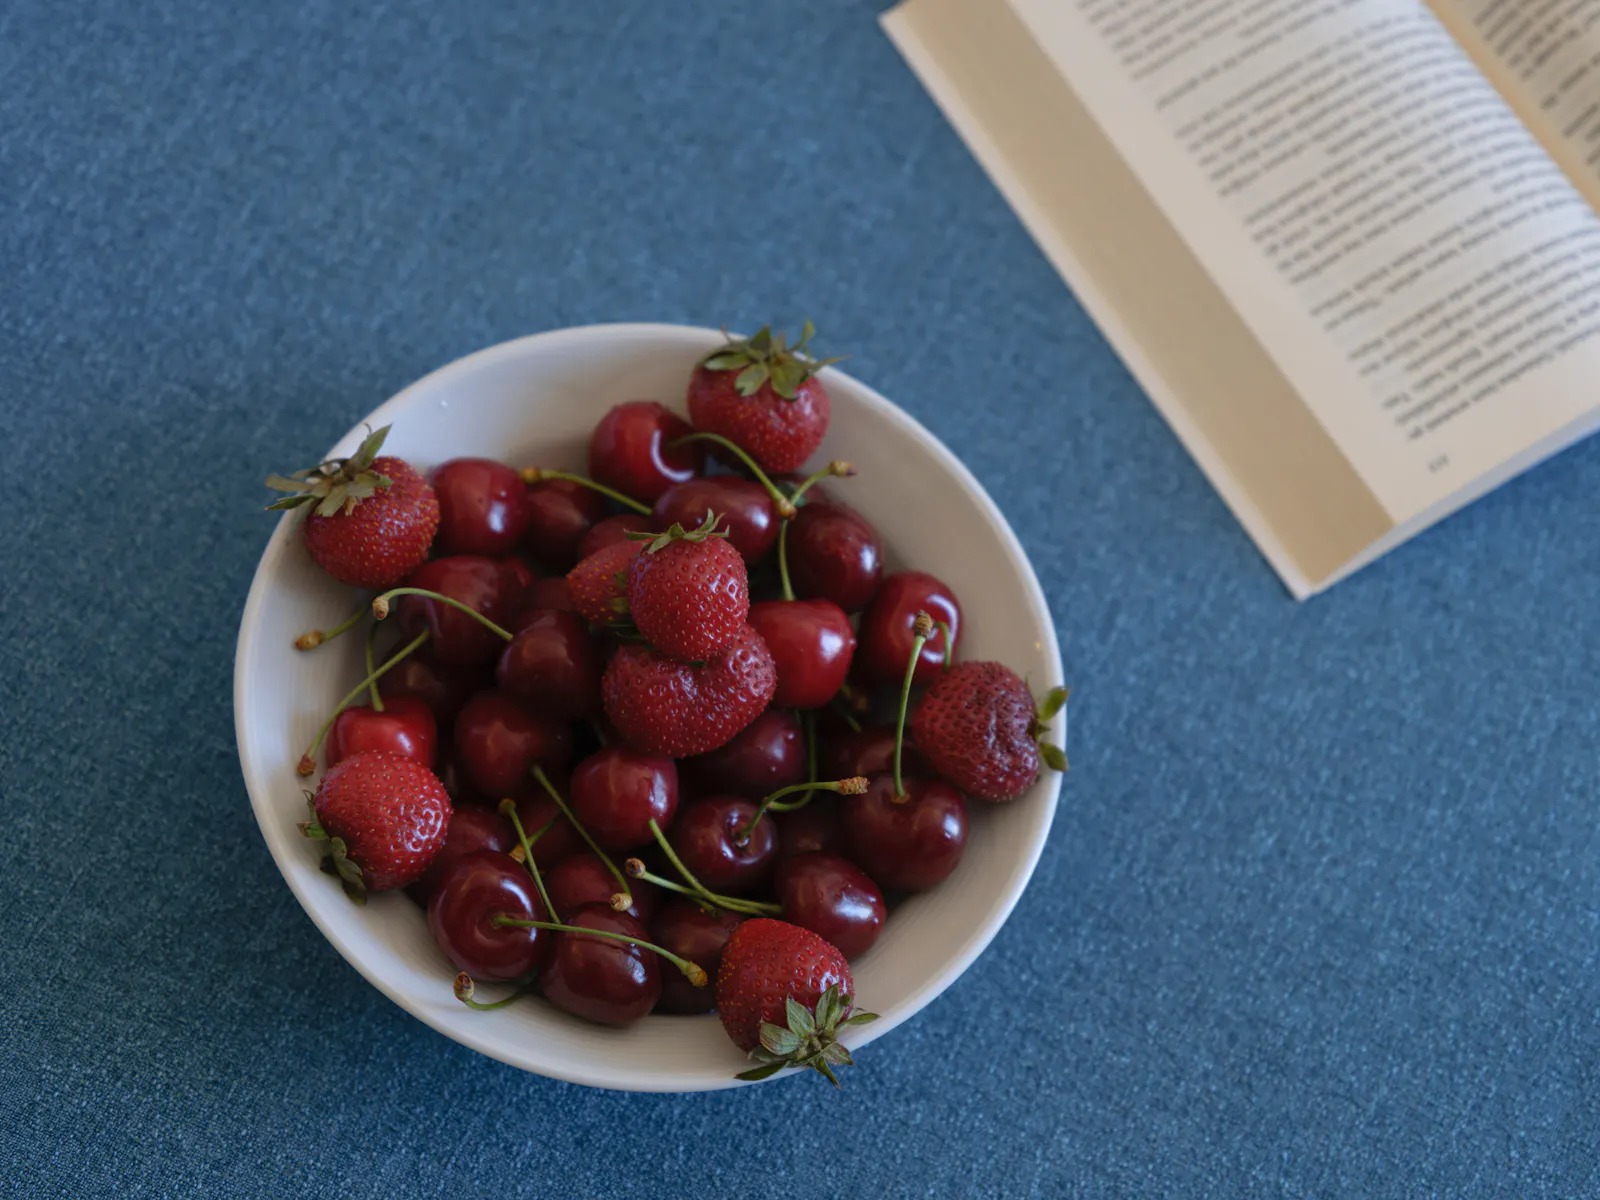 Eine Schale mit Kirschen und Erdbeeren steht auf einem blauen Tischtuch. Daneben liegt ein Buch.